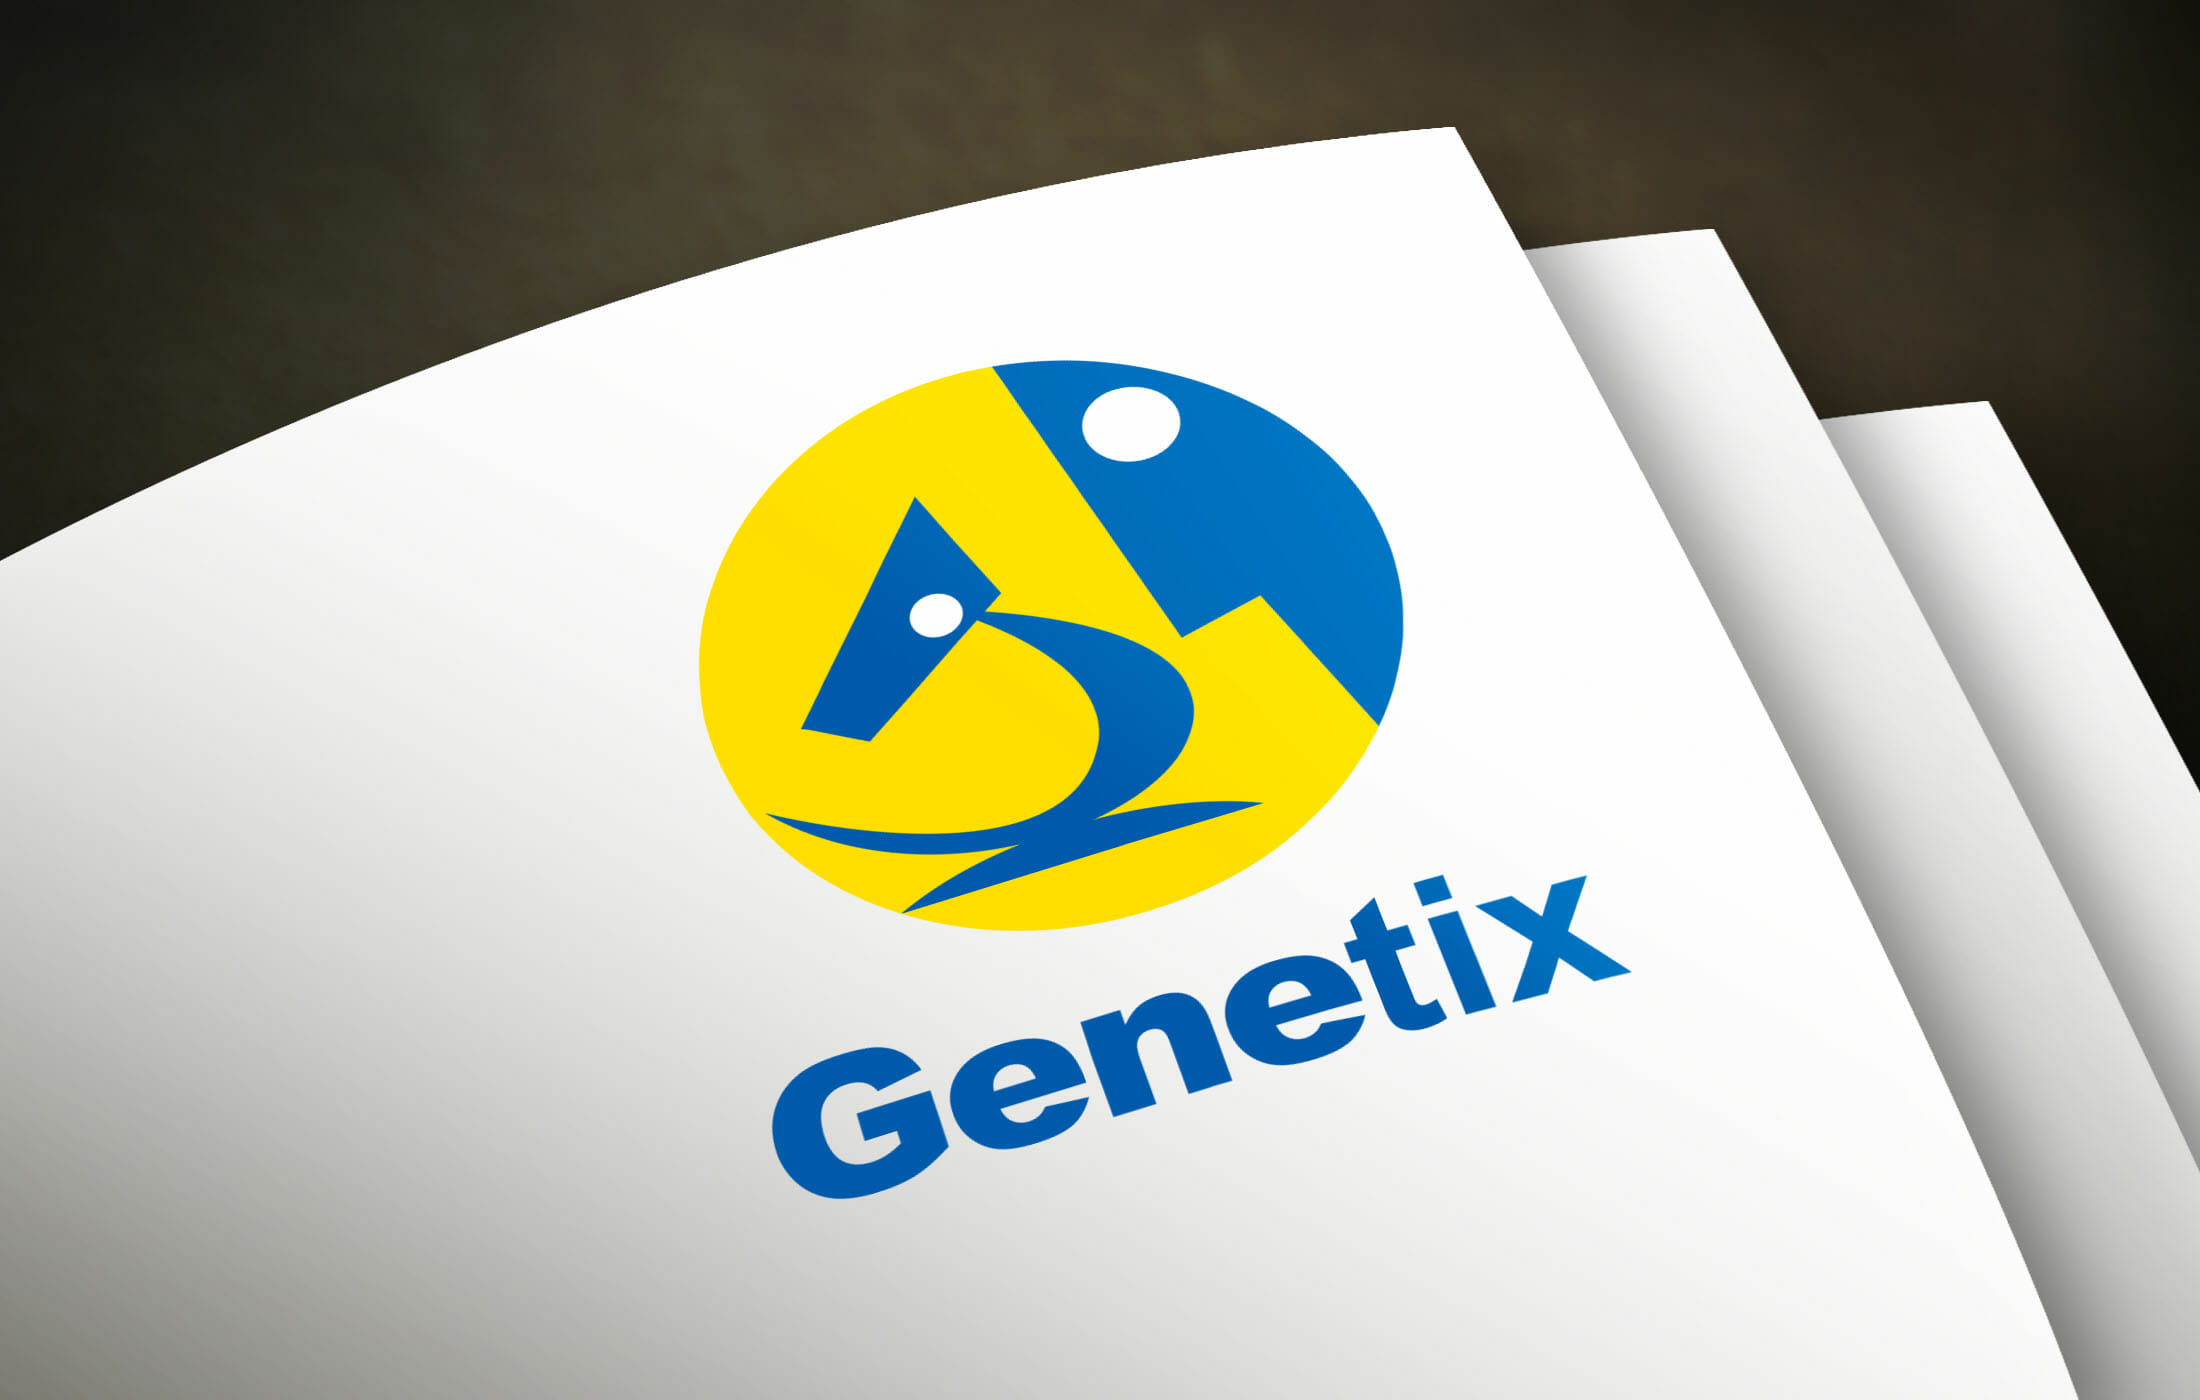 Logo Genetix